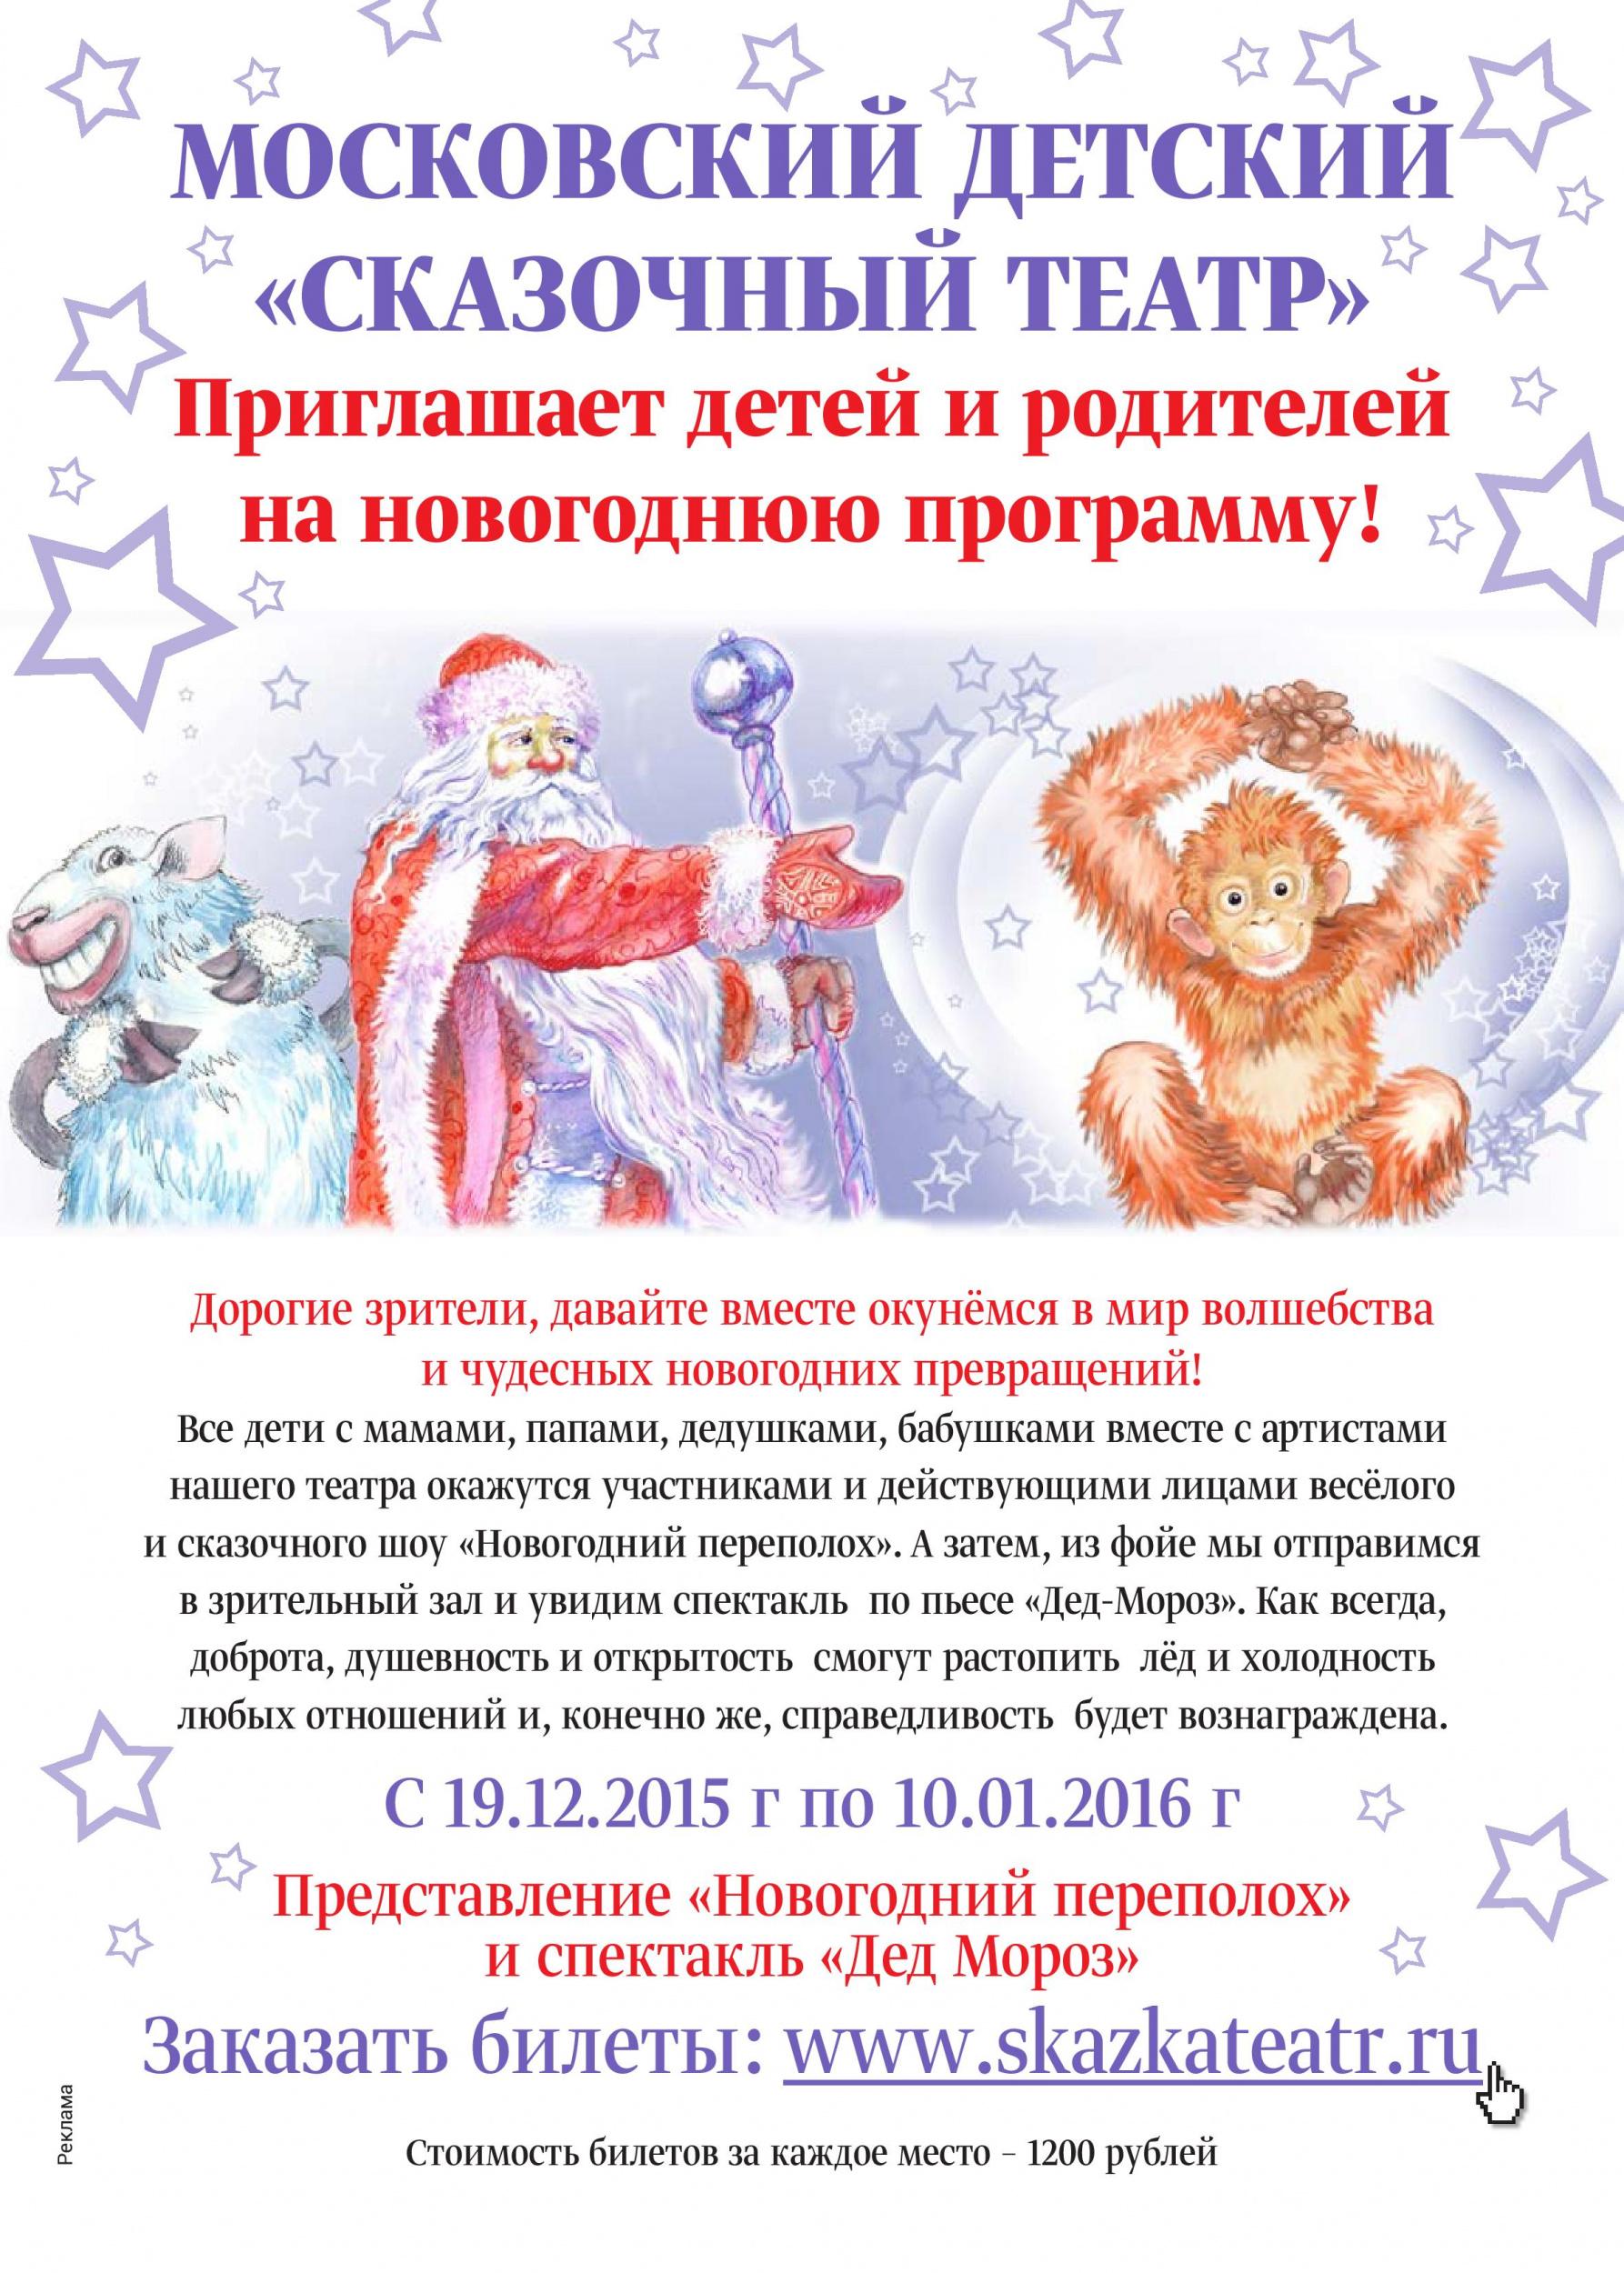 Представление «Новогодний переполох» и спектакль «Дед Мороз»